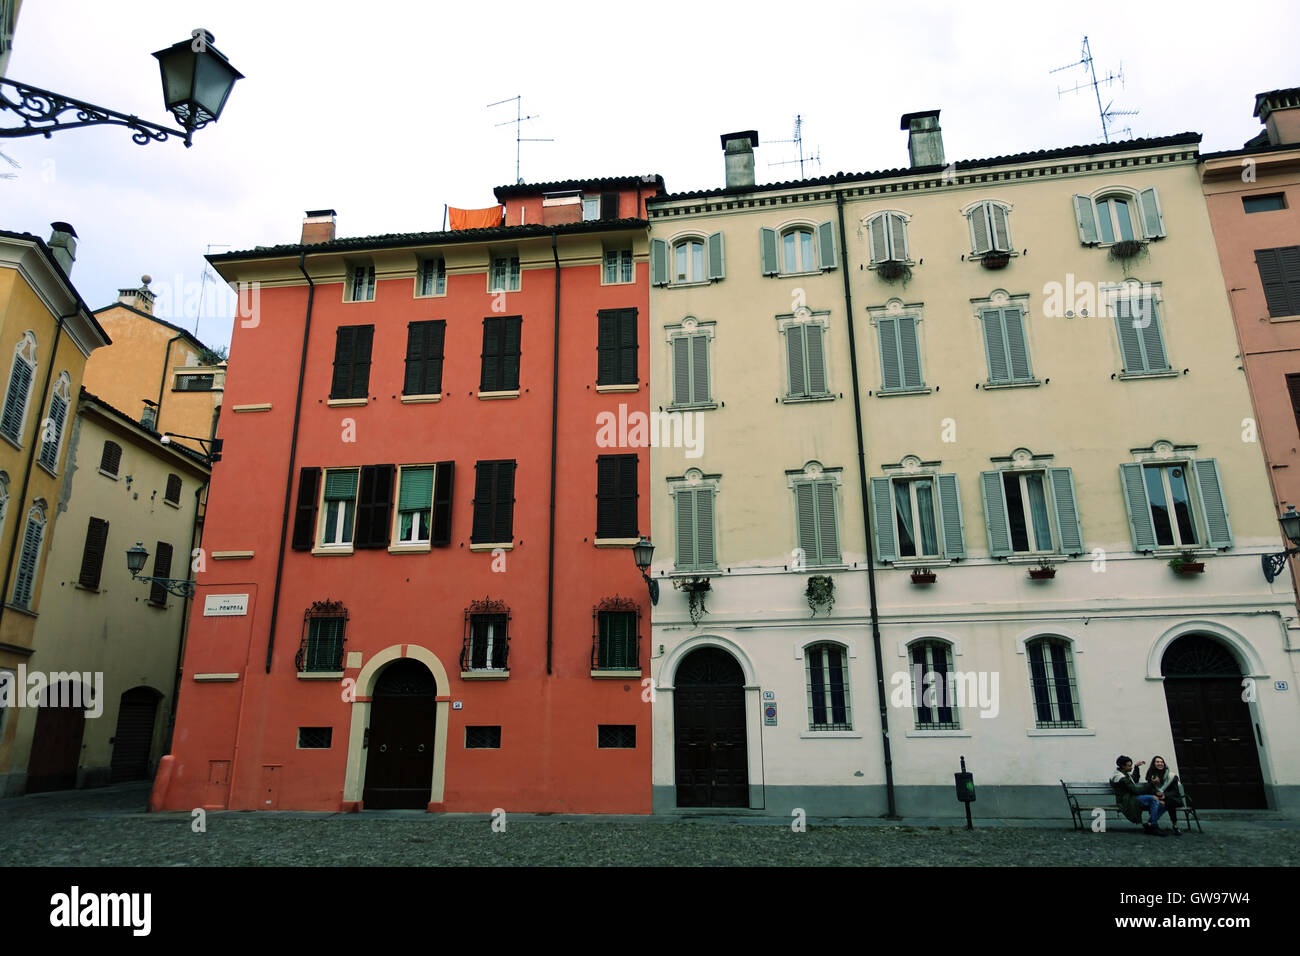 Maisons historiques prises de Pomposa, Modena, Italie Banque D'Images